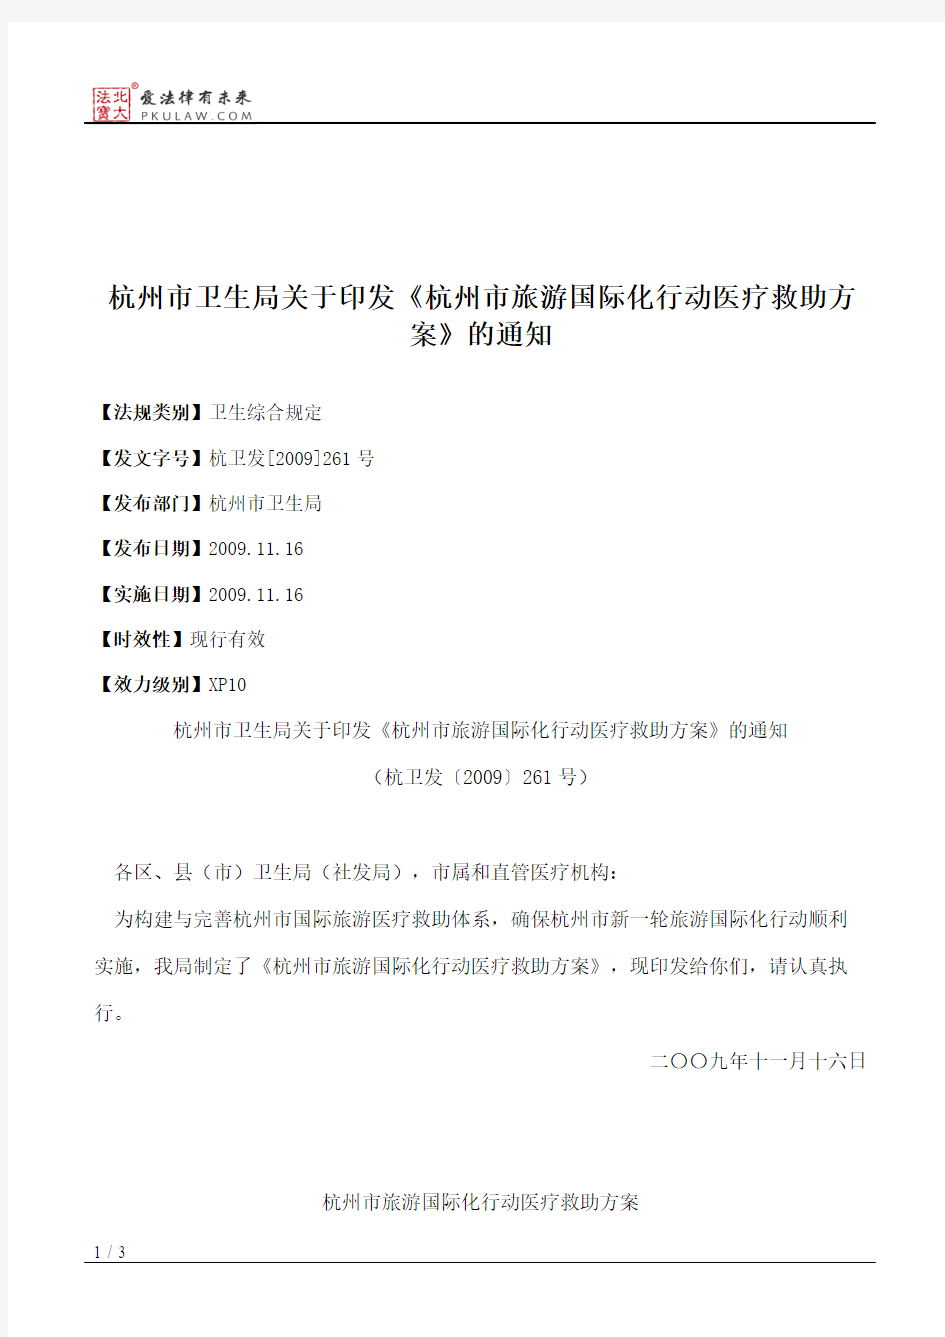 杭州市卫生局关于印发《杭州市旅游国际化行动医疗救助方案》的通知